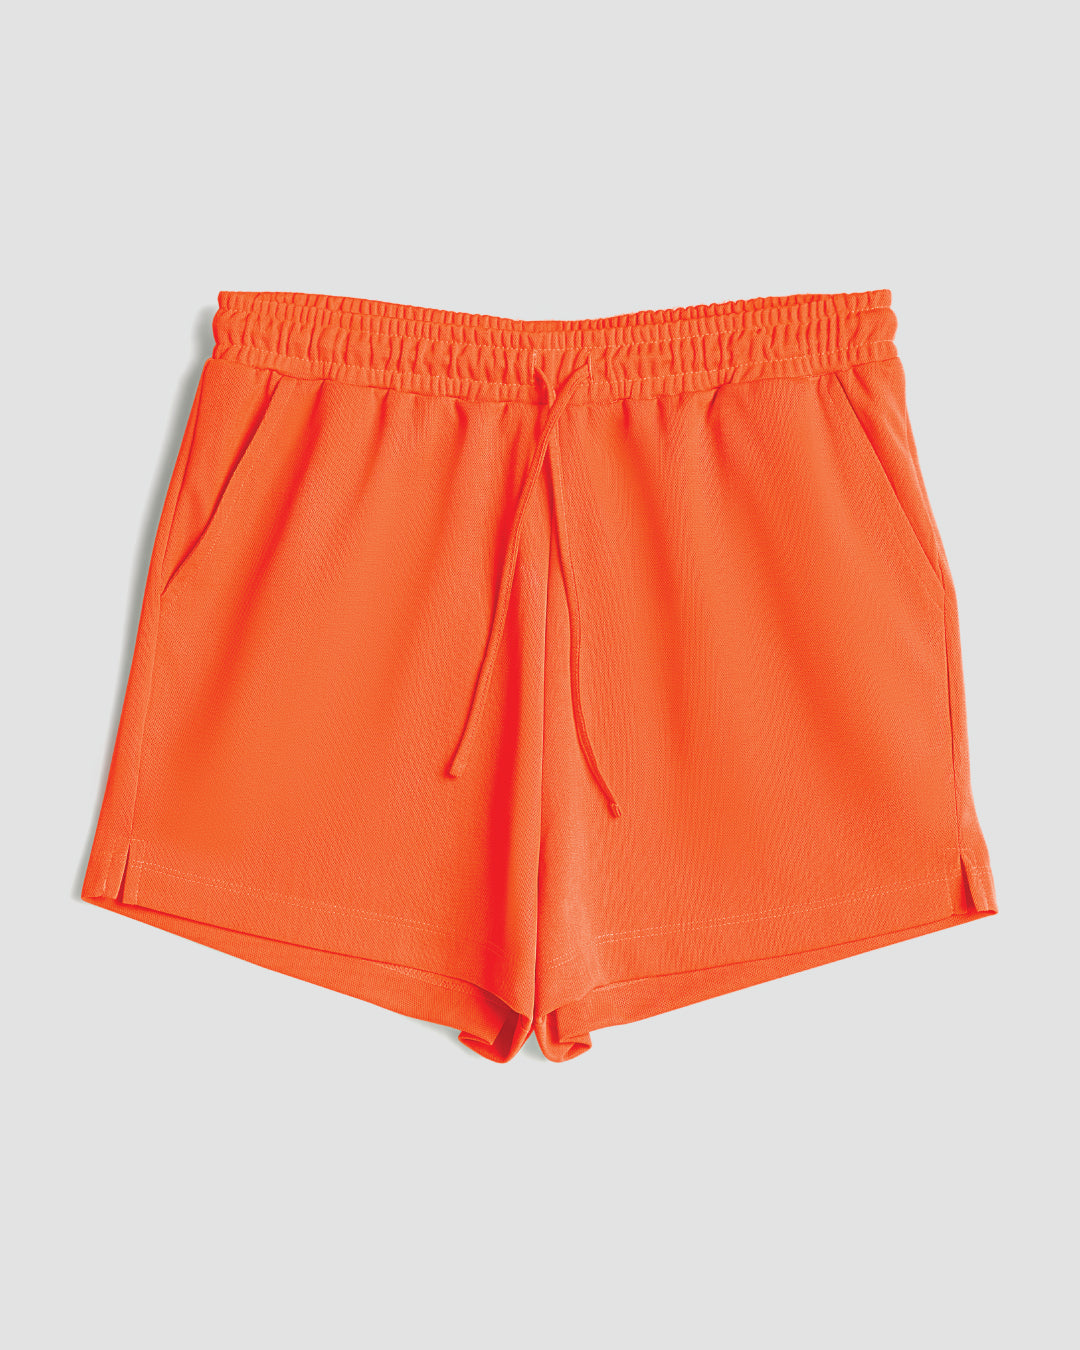 Rain or Shine Active Shorts - Orange — MyEllement Boutique